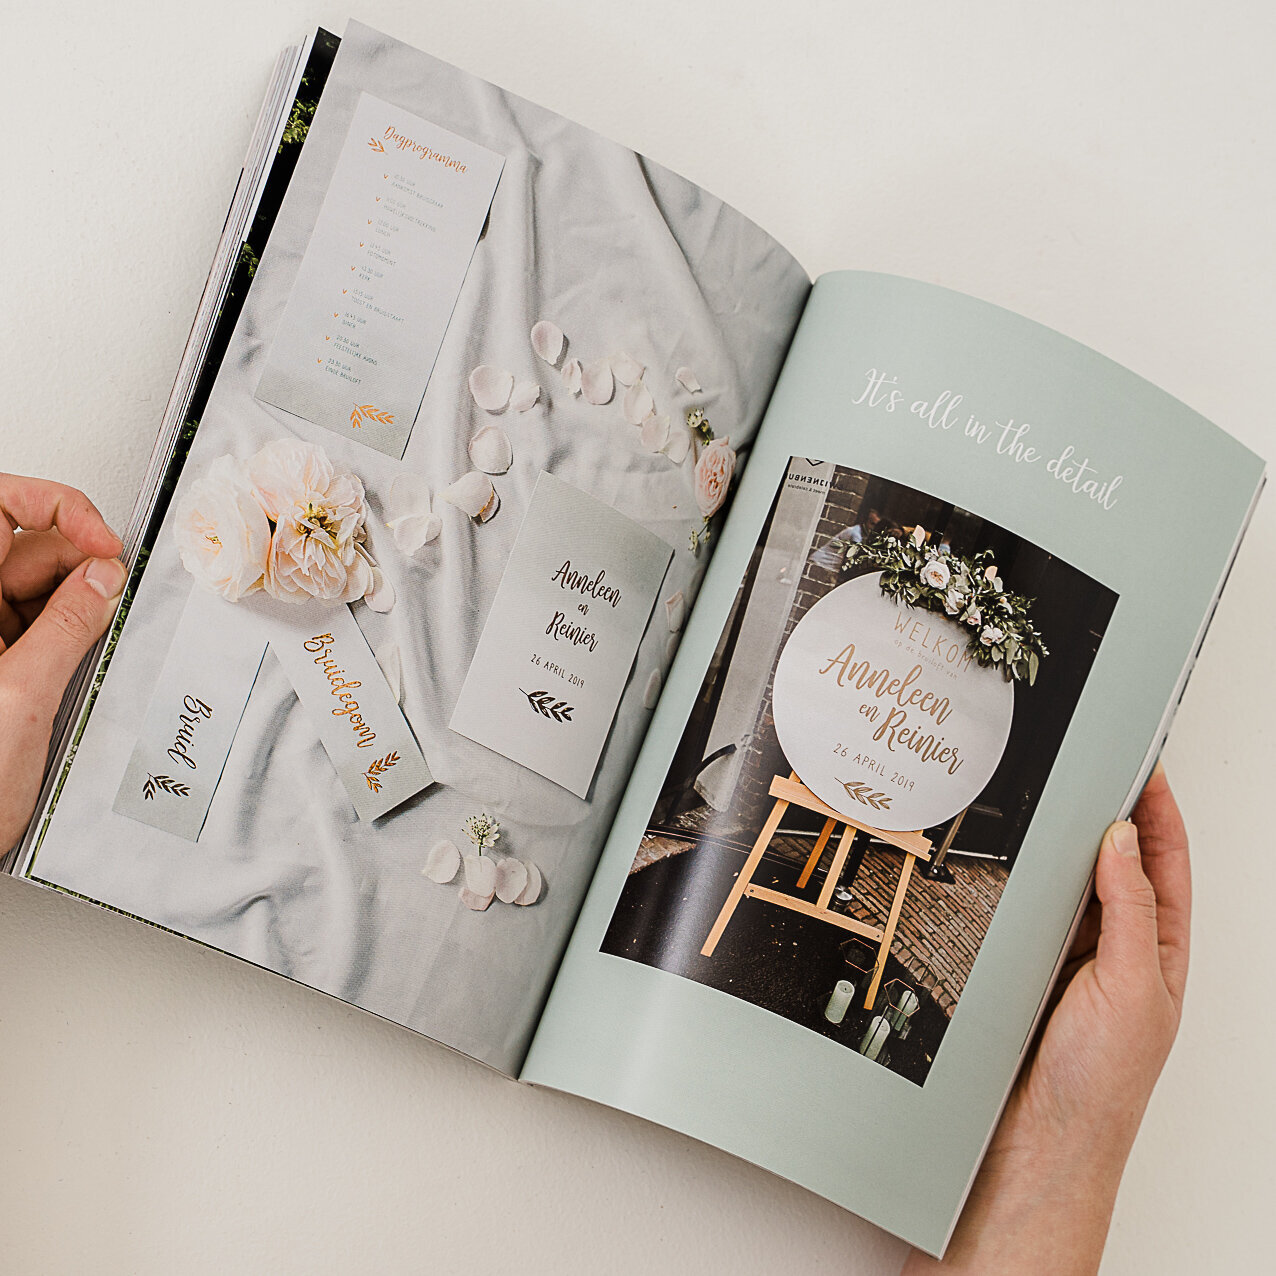 Drukwerk trouwen in minimalistic magazine